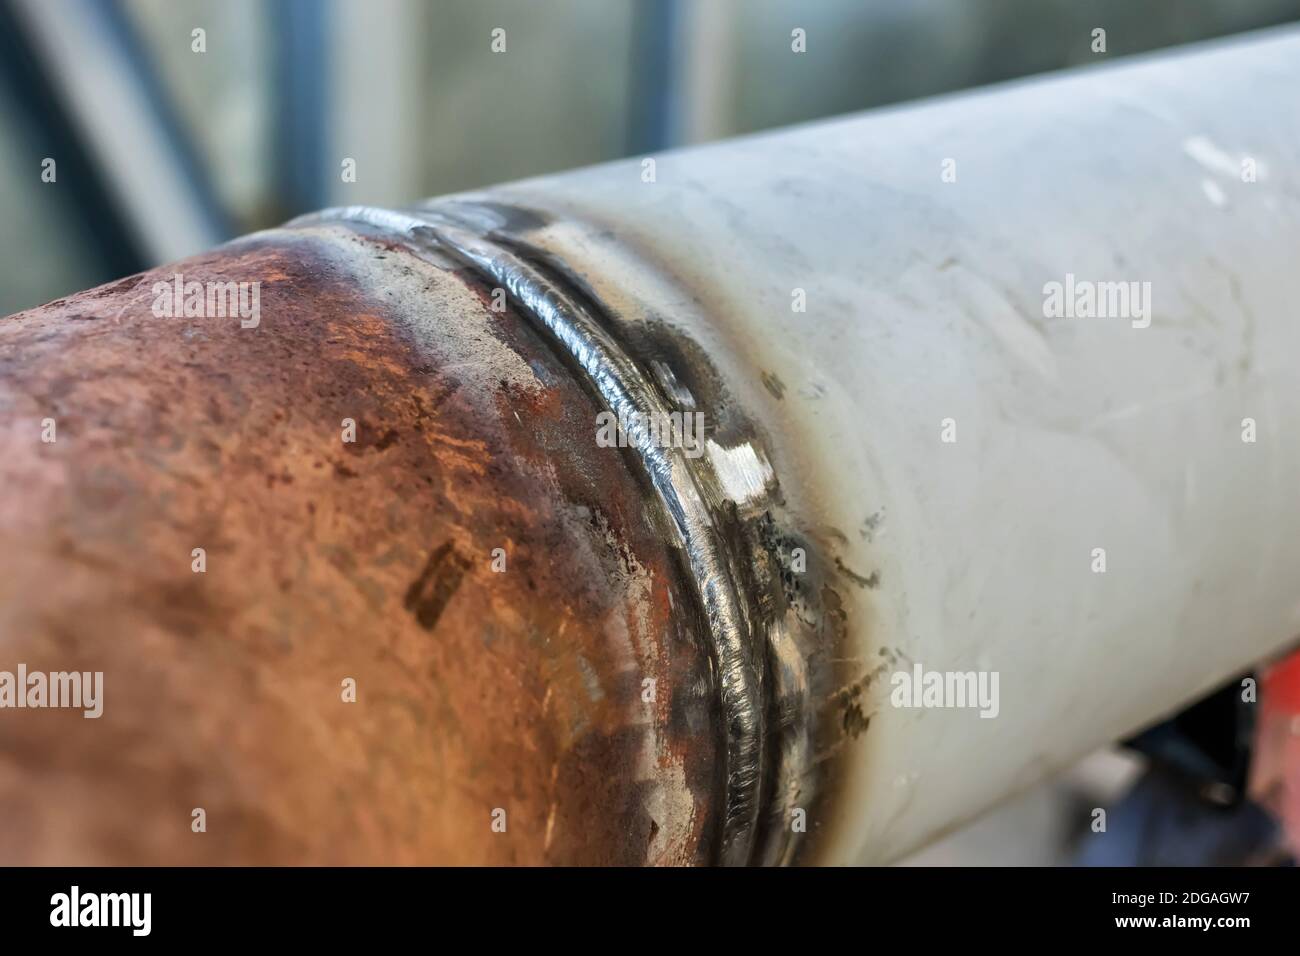 Annular butt welded seam tube Stock Photo